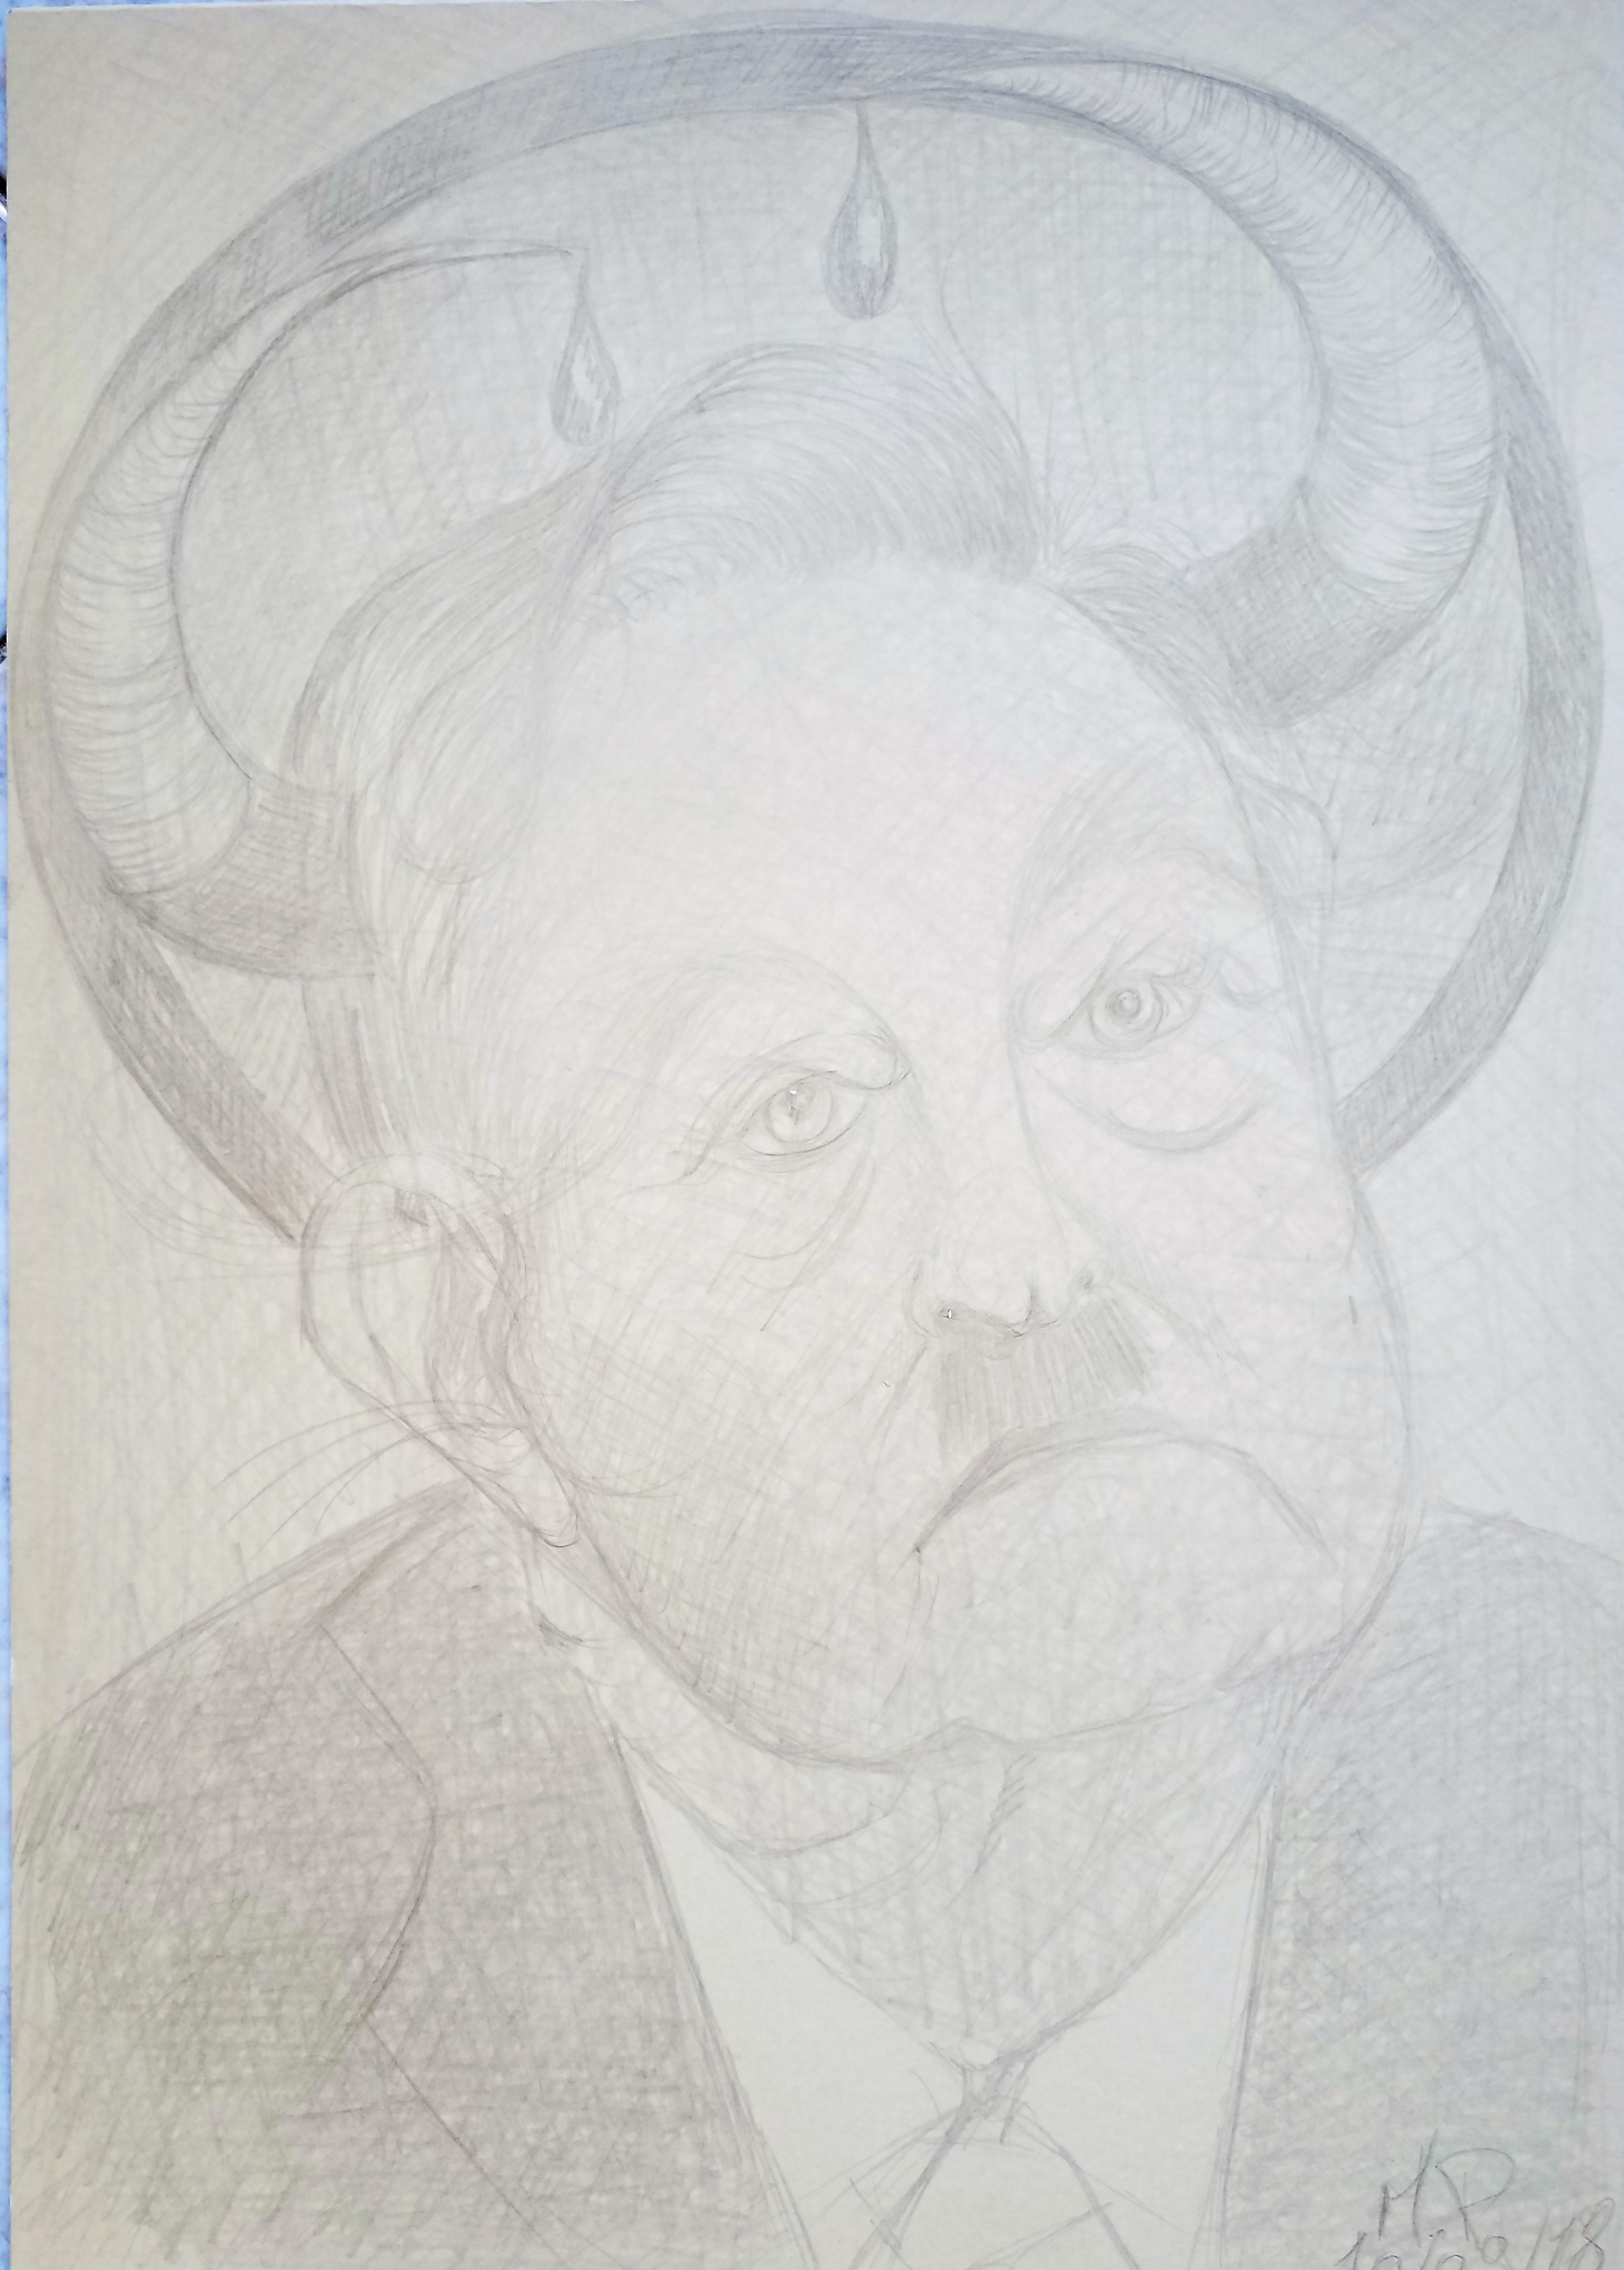 Ritratto di George Soros, 2018 cm 24x34,disegno con MINA D'ARGENTO PURO 1000/1000 su carta preparata opportunamente, Pasquale Mastrogiacomo,Acerno(SA).